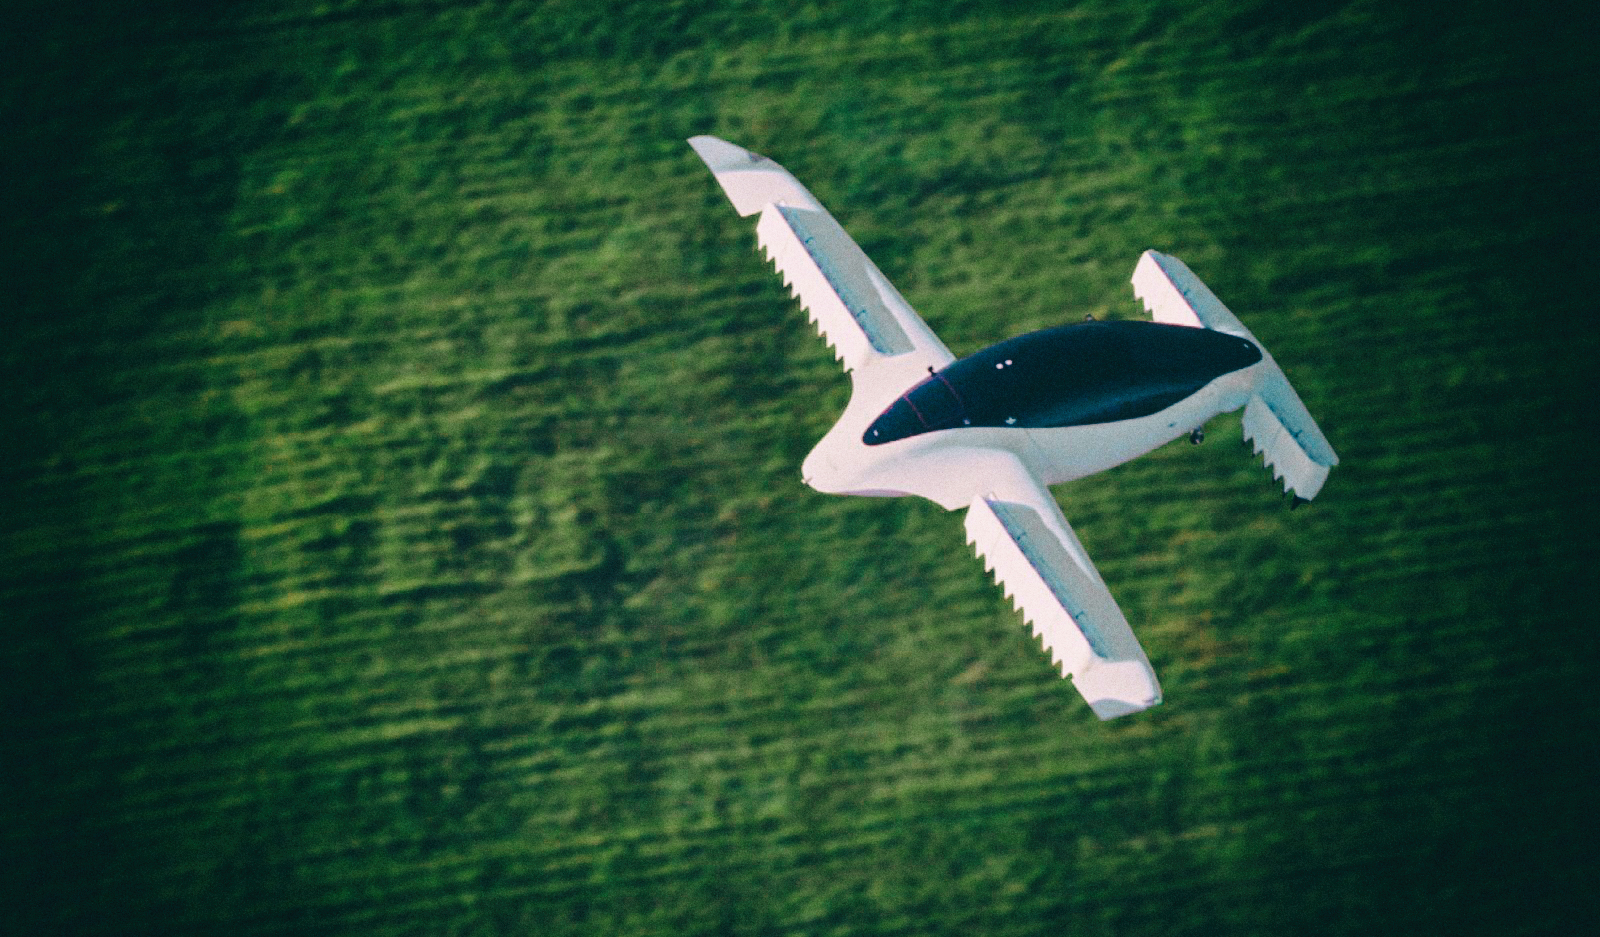 Летающий автомобиль Lilium Jet прошел полноценные летные испытания